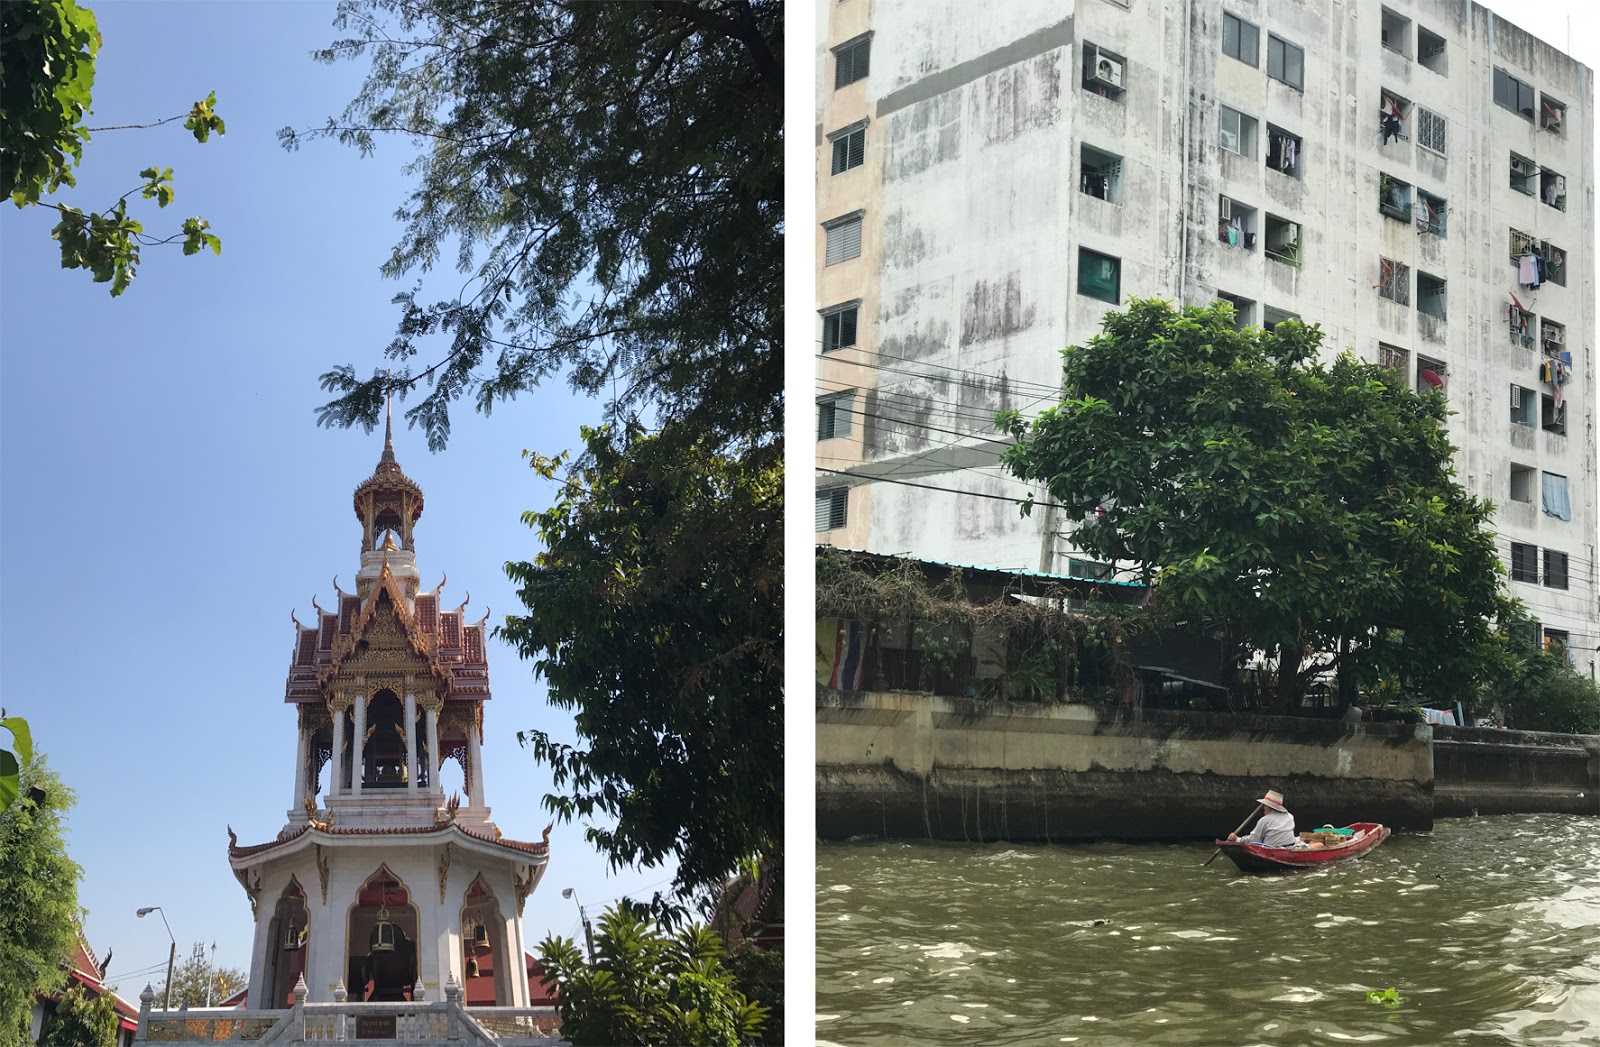 Bangkok Temple View and River